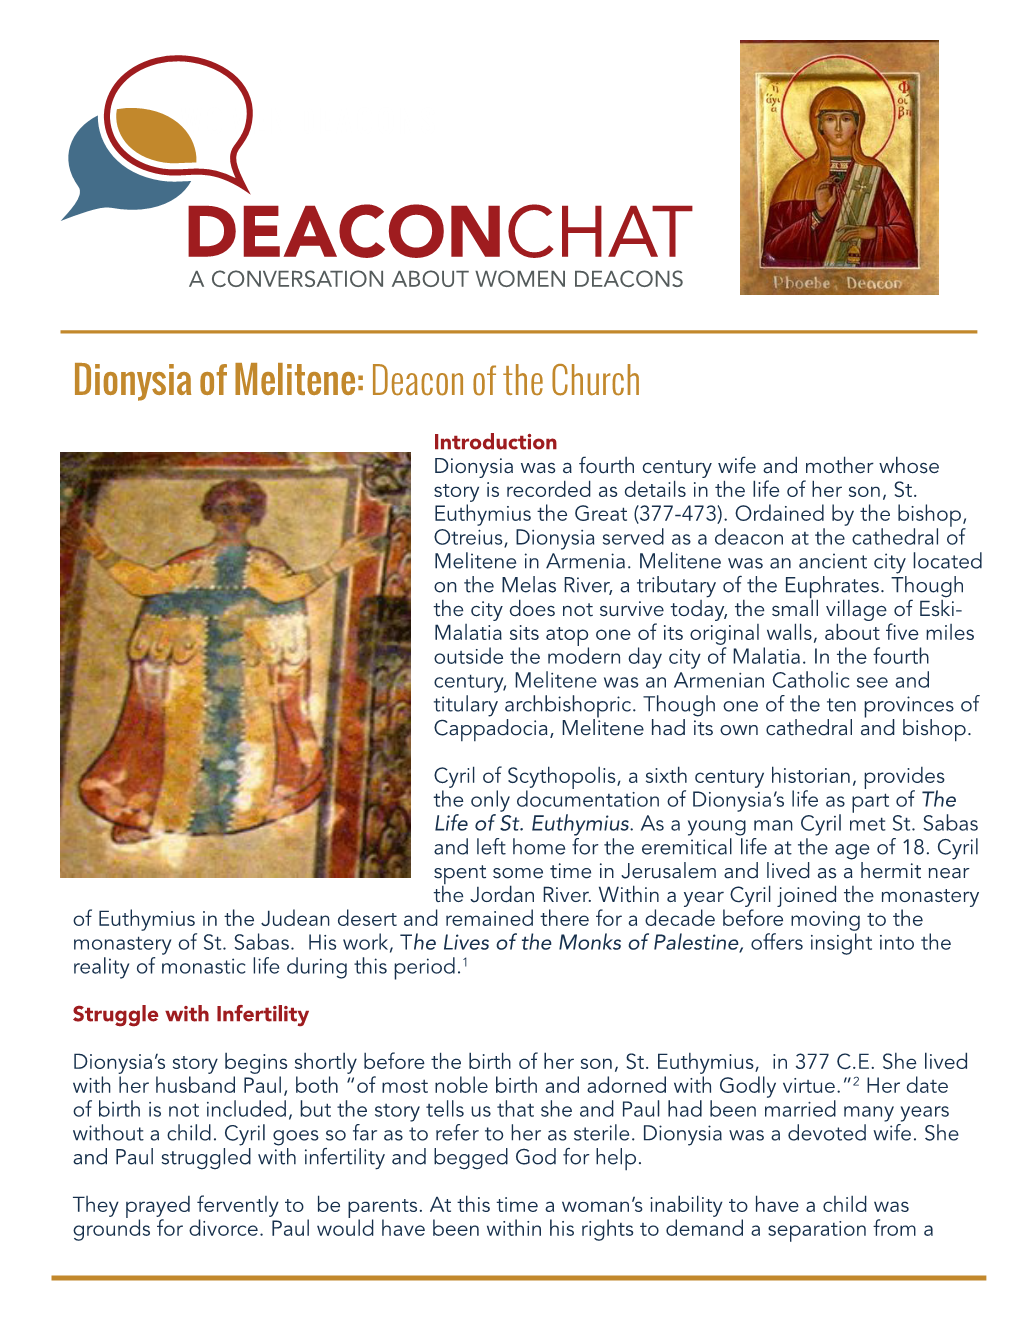 Profile of Dionysia of Militene, Deacon